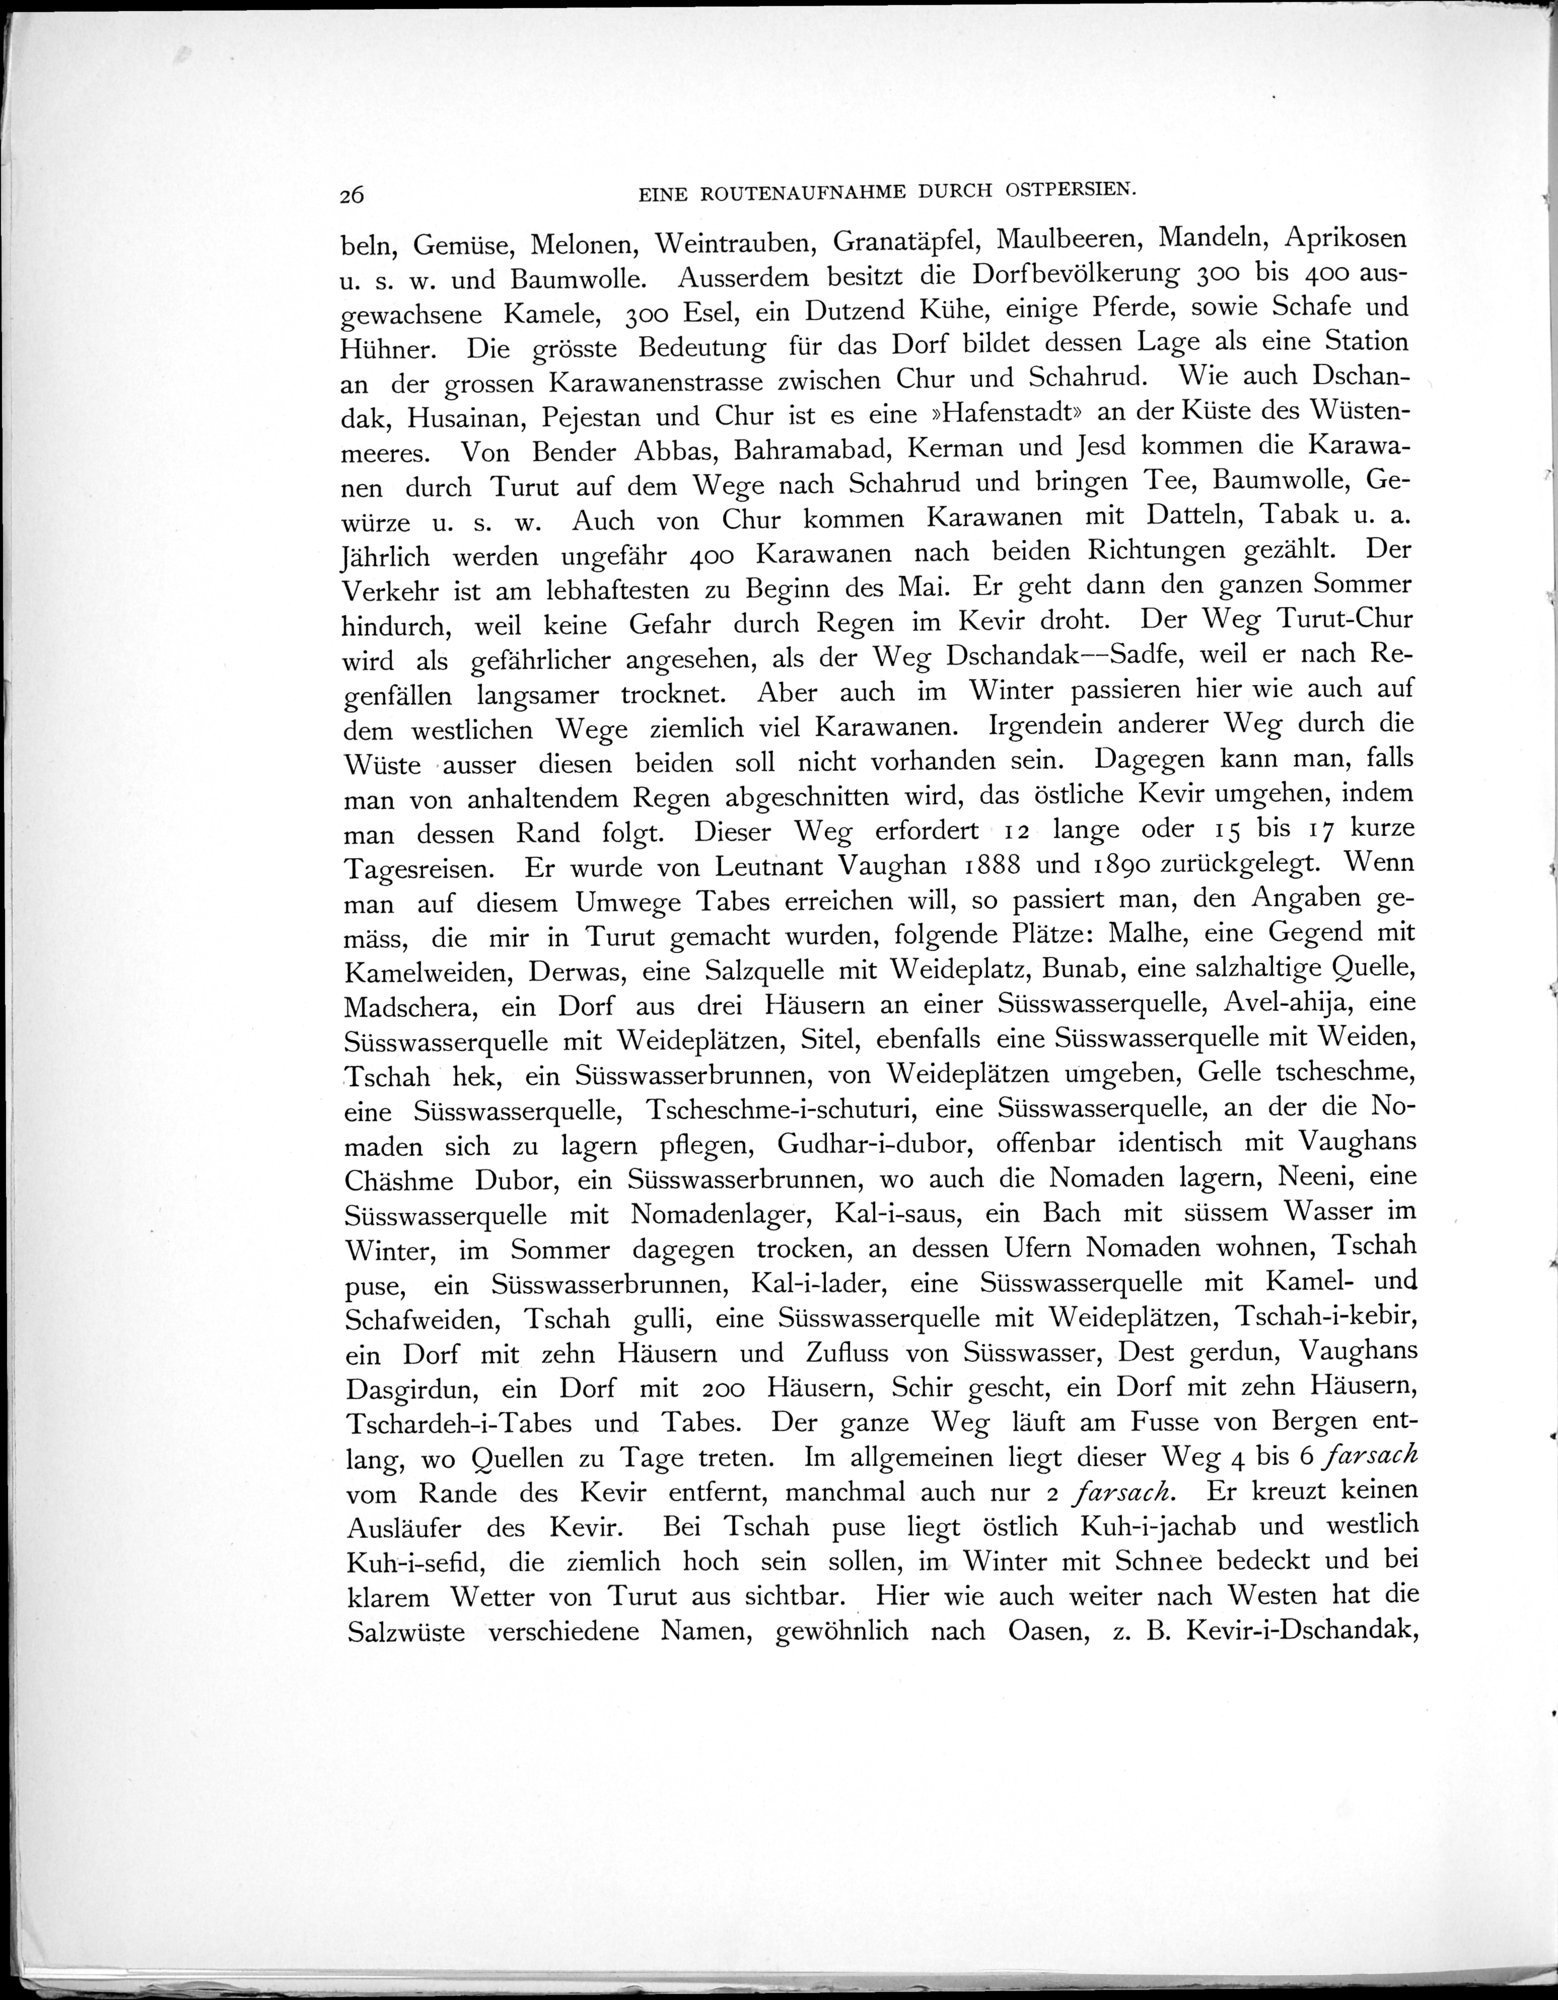 Eine Routenaufnahme durch Ostpersien : vol.1 / Page 82 (Grayscale High Resolution Image)